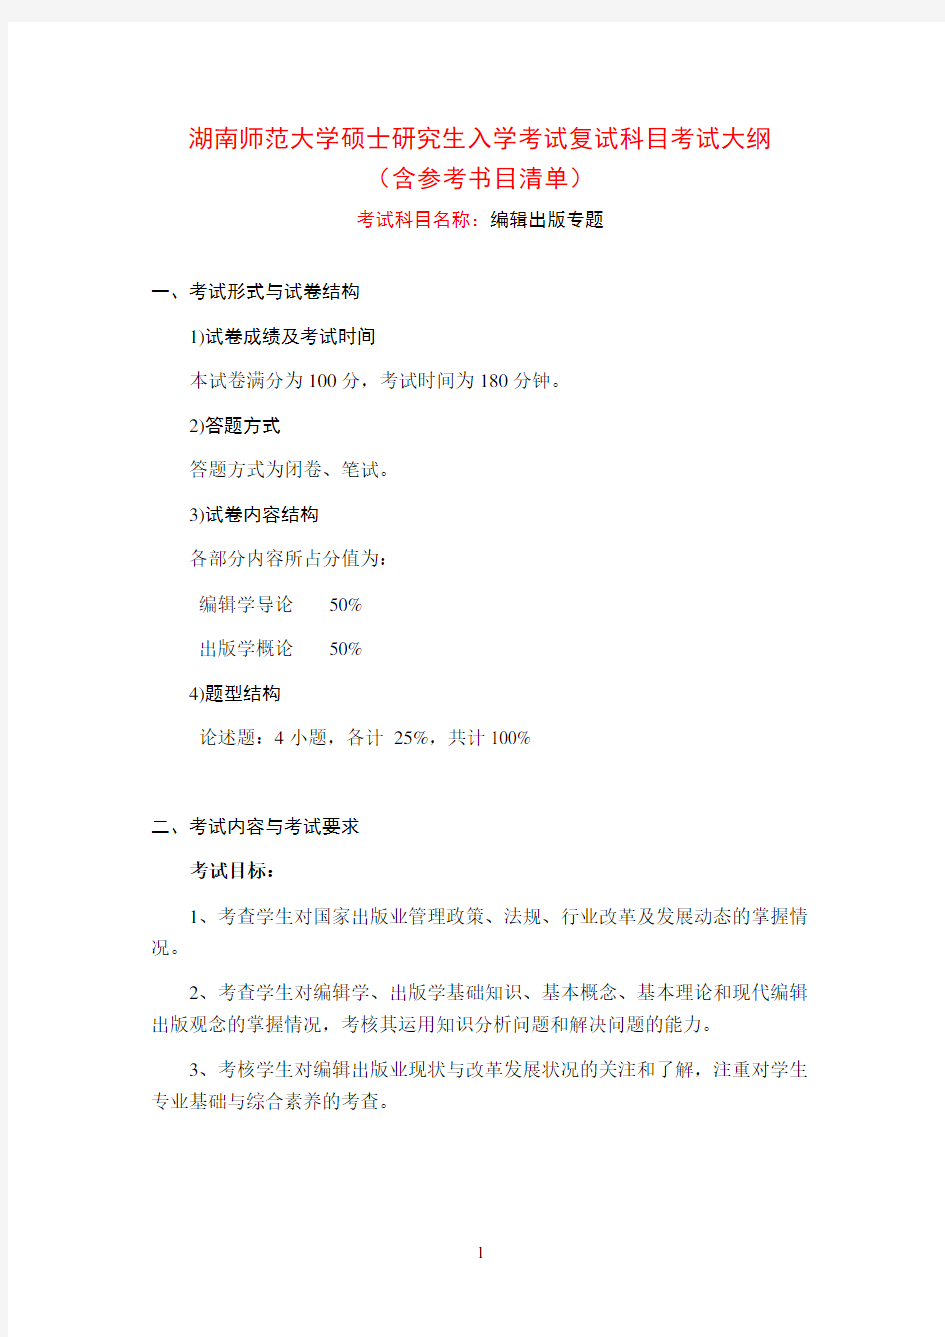 2020年湖南师范大学编辑出版专题考研复试考试大纲(含参考书目)